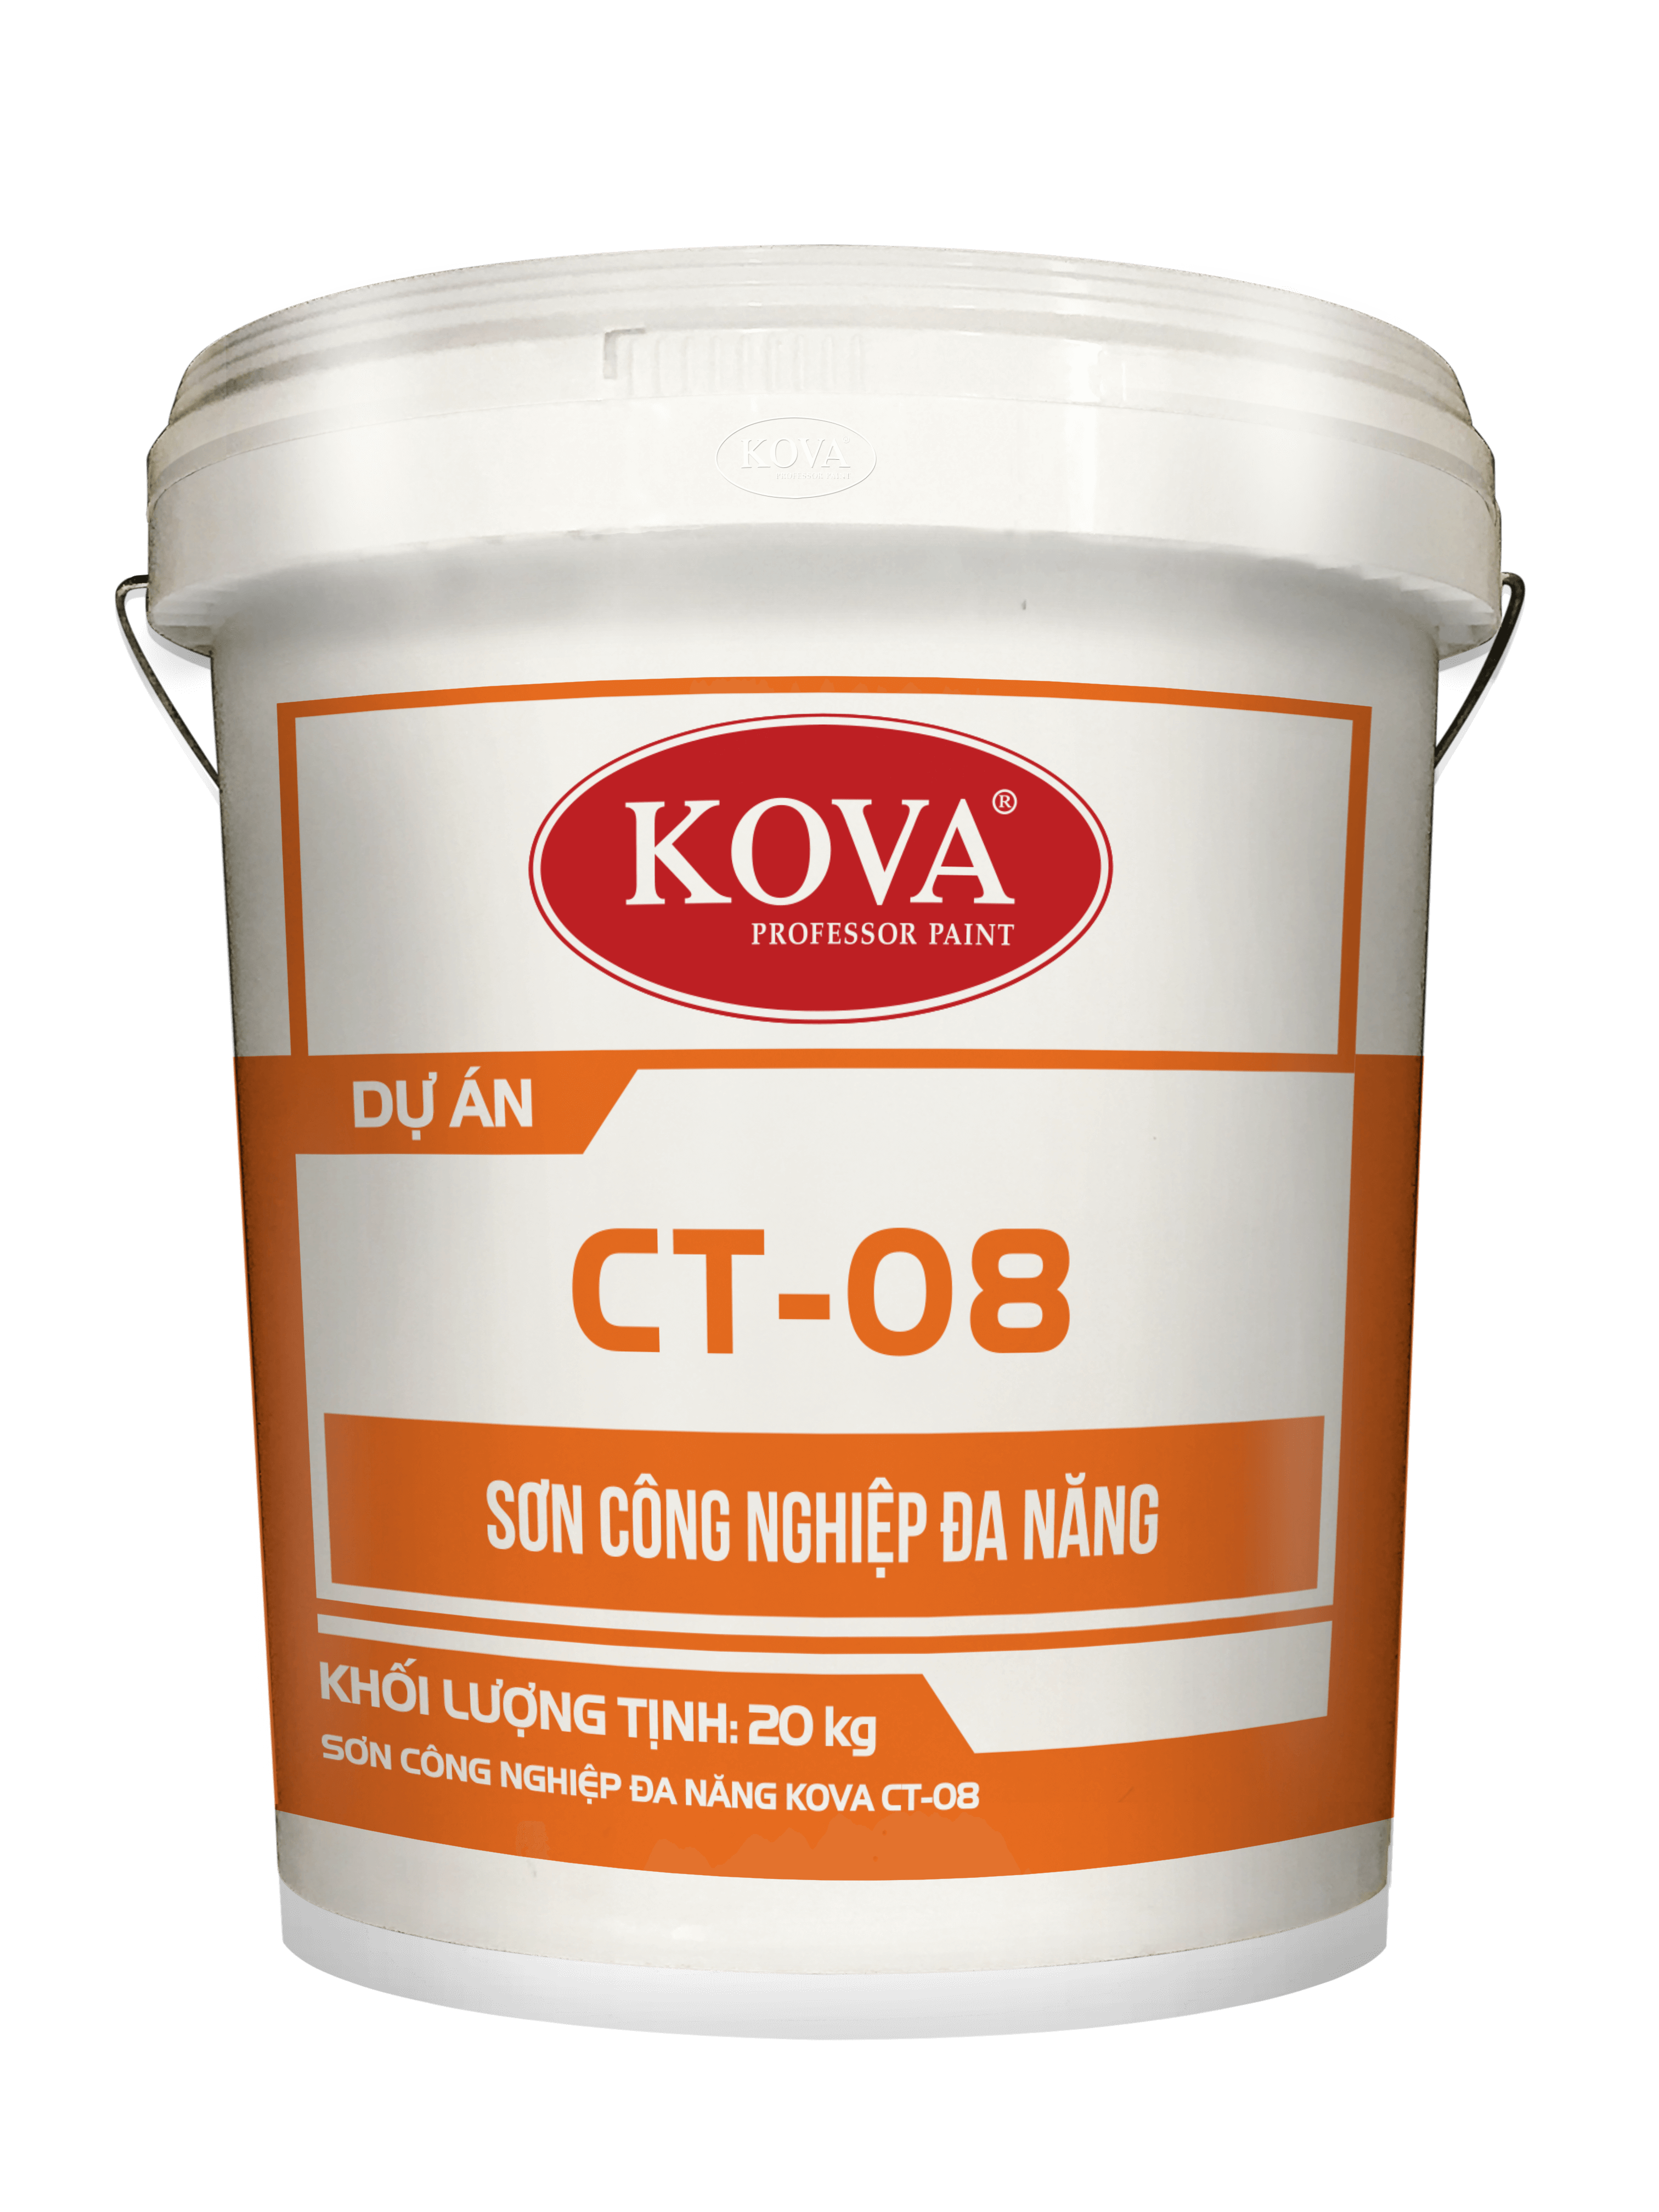 Báo giá sơn Kova CT08 chính là giải pháp tuyệt vời cho những người đang cần sơn công trình. Với giá cả hợp lý và chất lượng đảm bảo, xem ngay hình ảnh liên quan để đánh giá sản phẩm này.